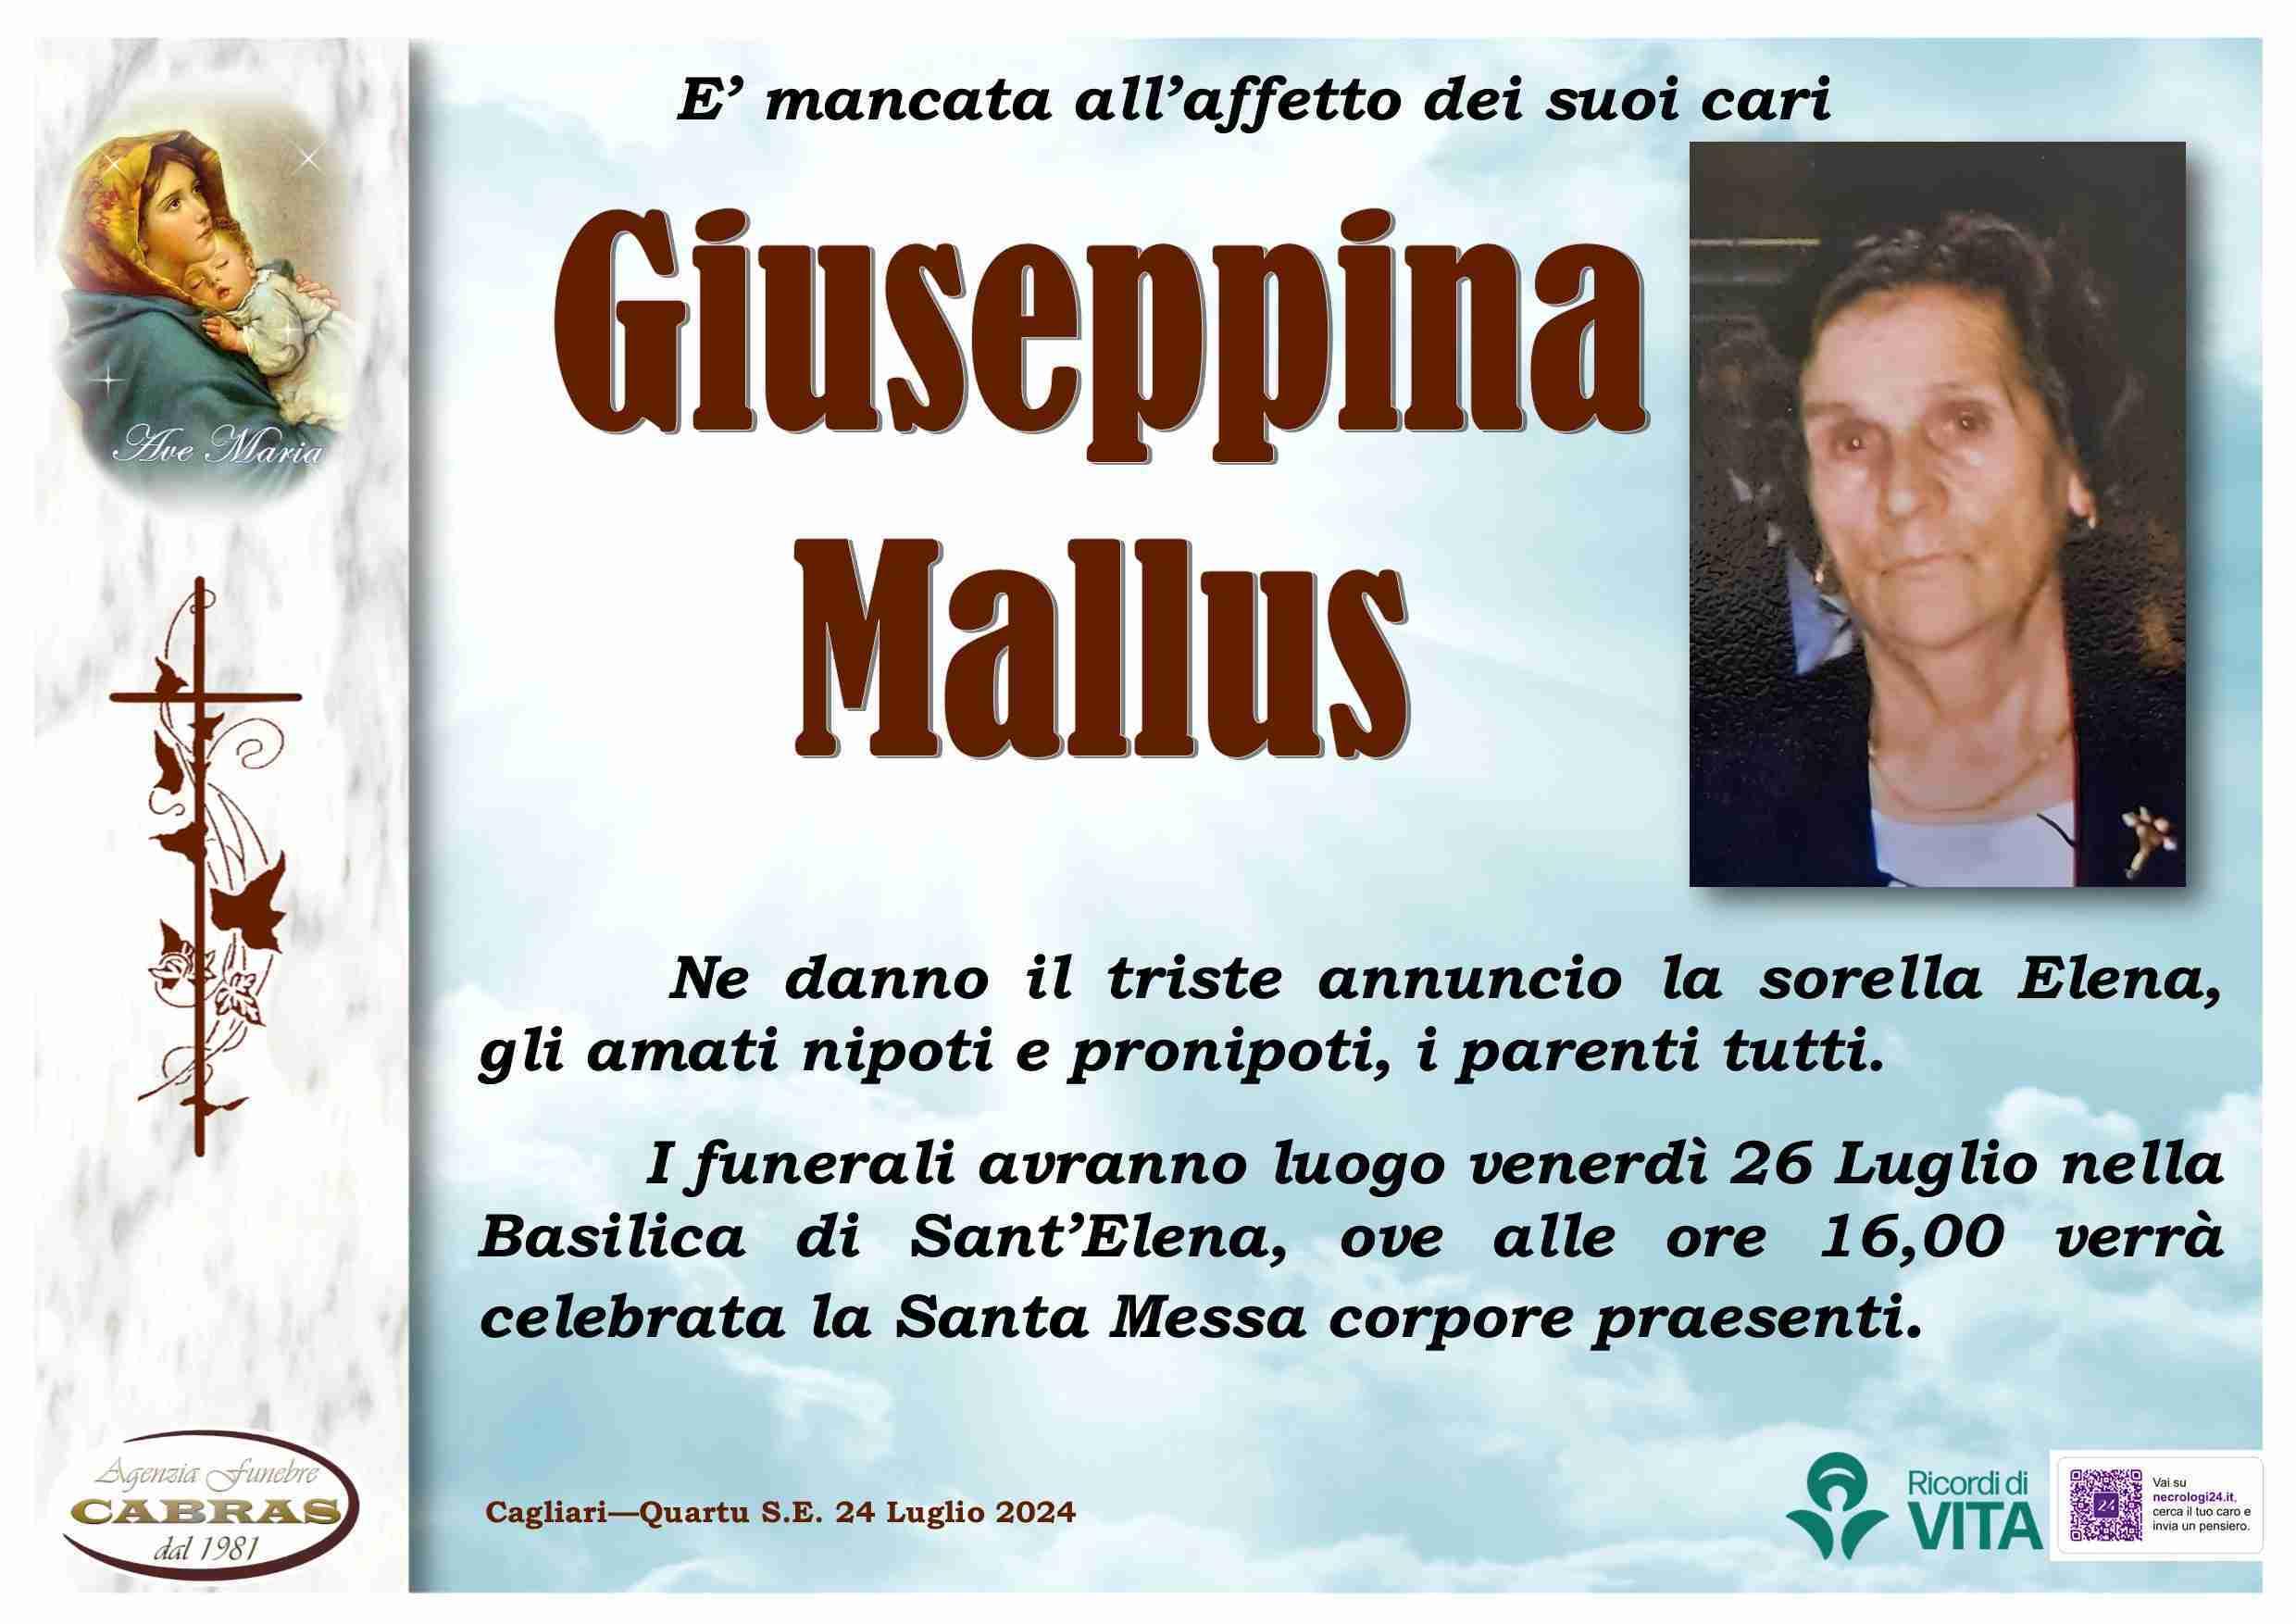 Giuseppina Mallus